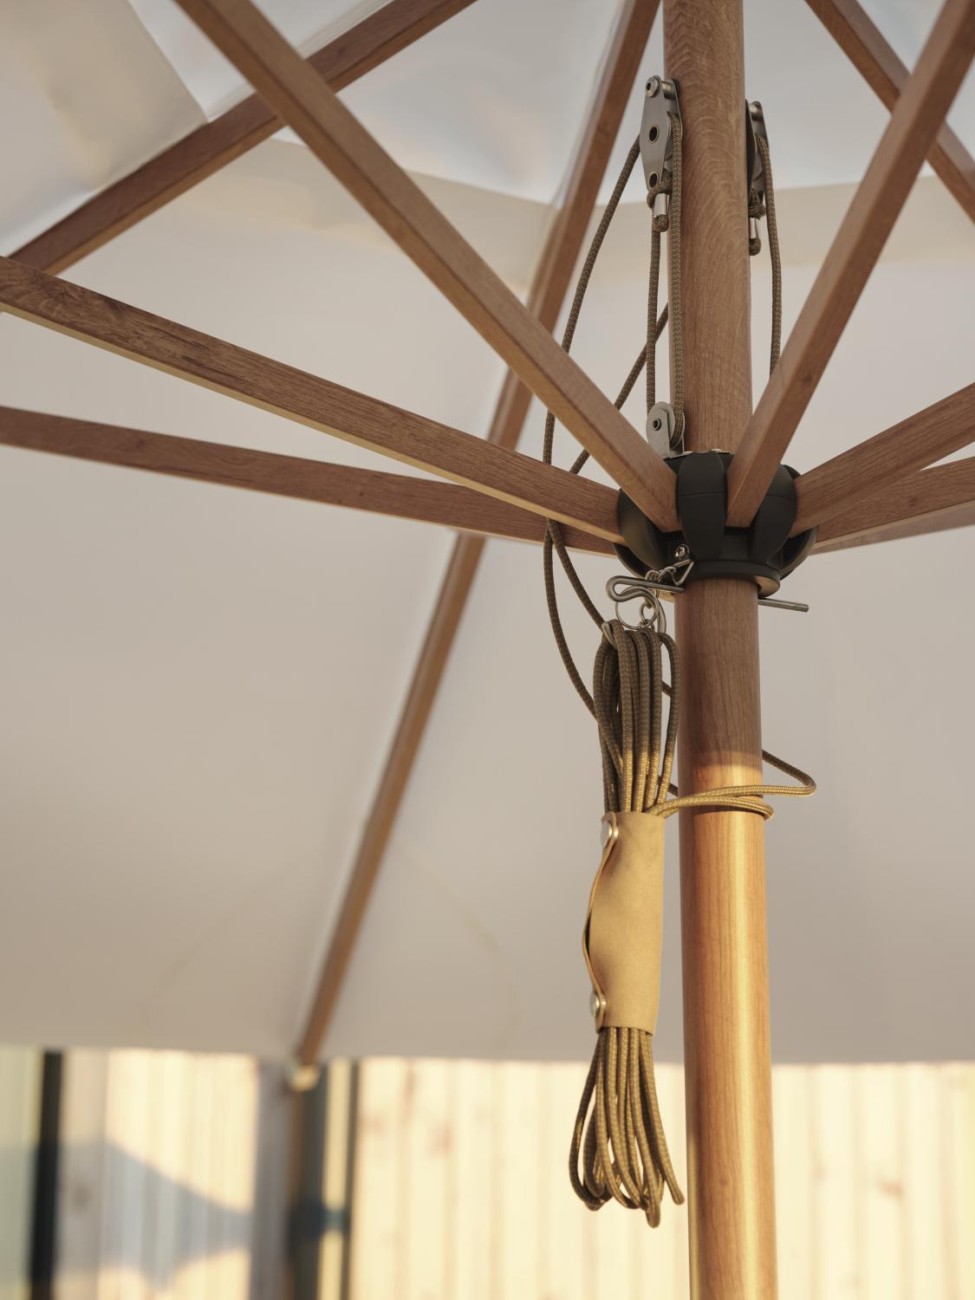 Der Sonnenschirm Paliano überzeugt mit seinem modernen Design. Gefertigt wurde er aus Kunstfasern, welcher einen weißen Farbton besitzt. Das Gestell ist aus Metall und hat einen Holz-Optik. Der Schirm hat einen Durchmesser von 300 cm.